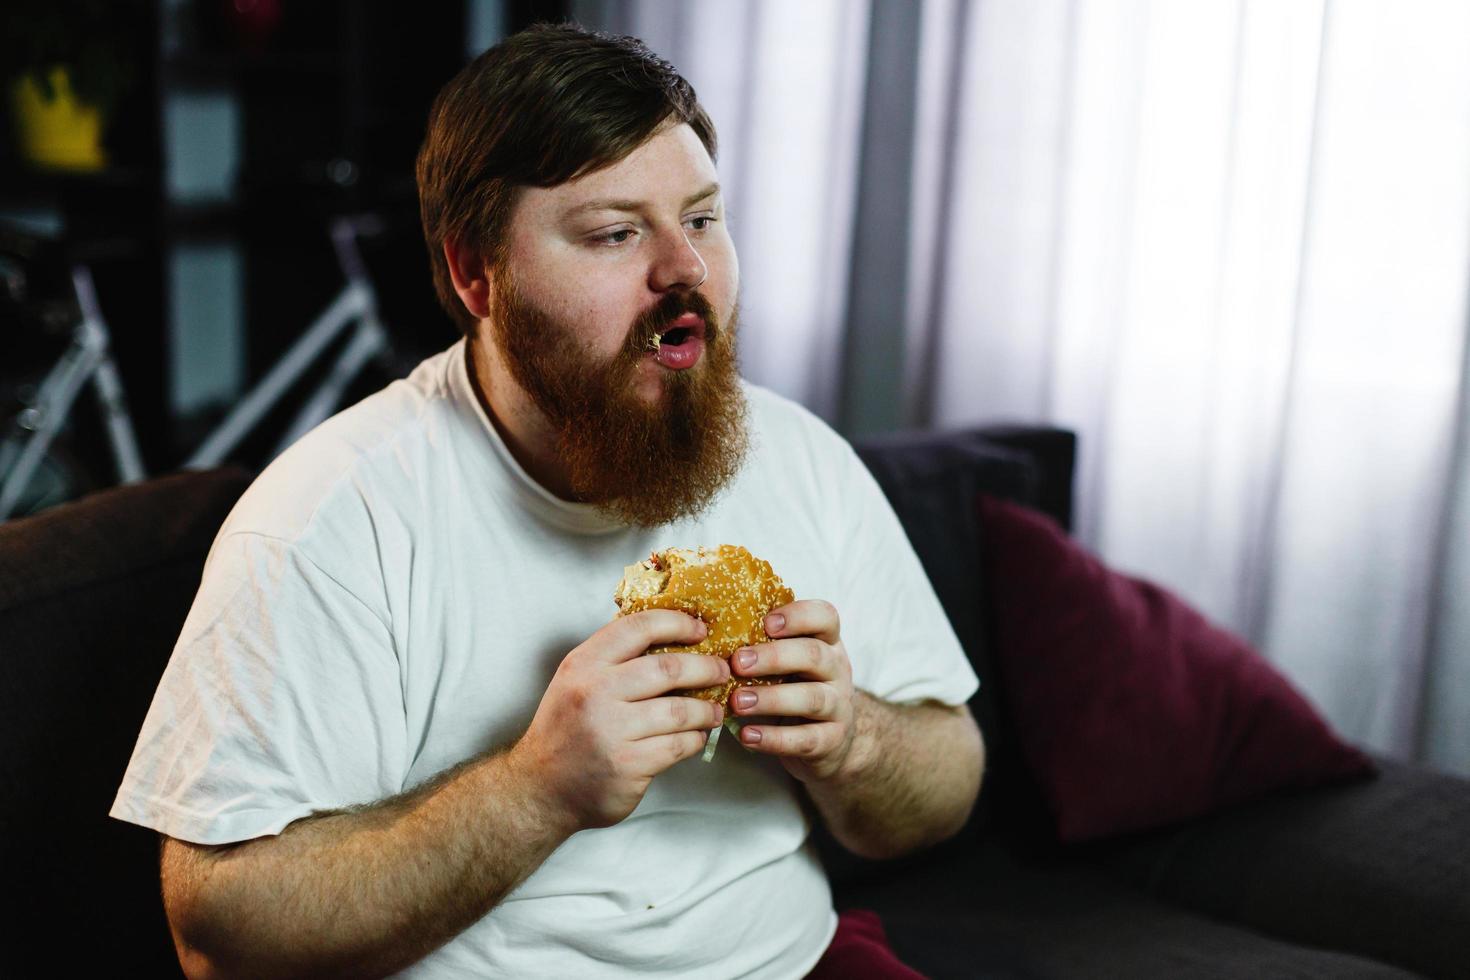 homem gordo sorridente comendo hambúrguer sentado em frente a um aparelho de TV foto